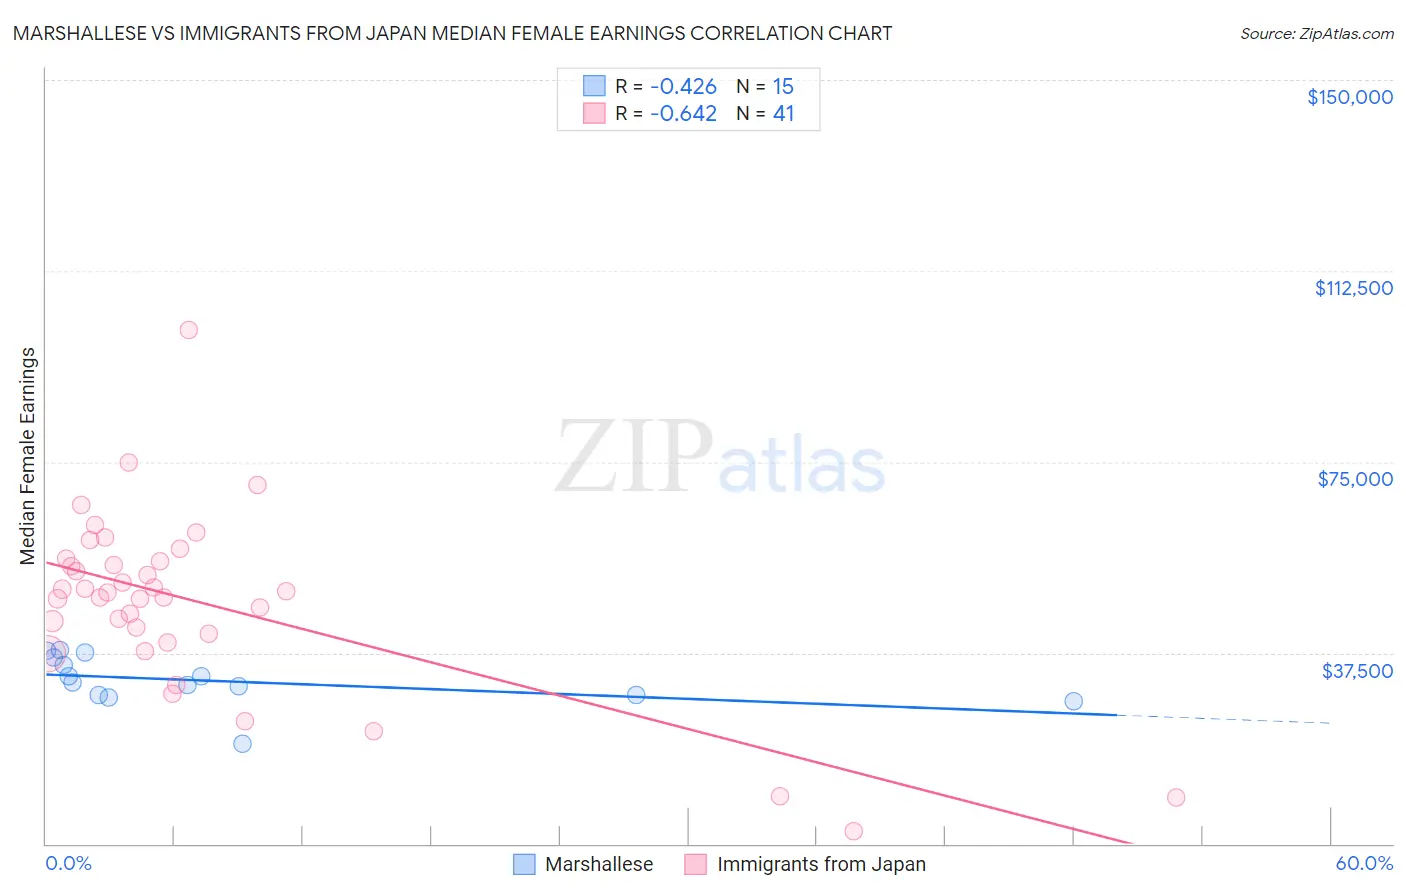 Marshallese vs Immigrants from Japan Median Female Earnings